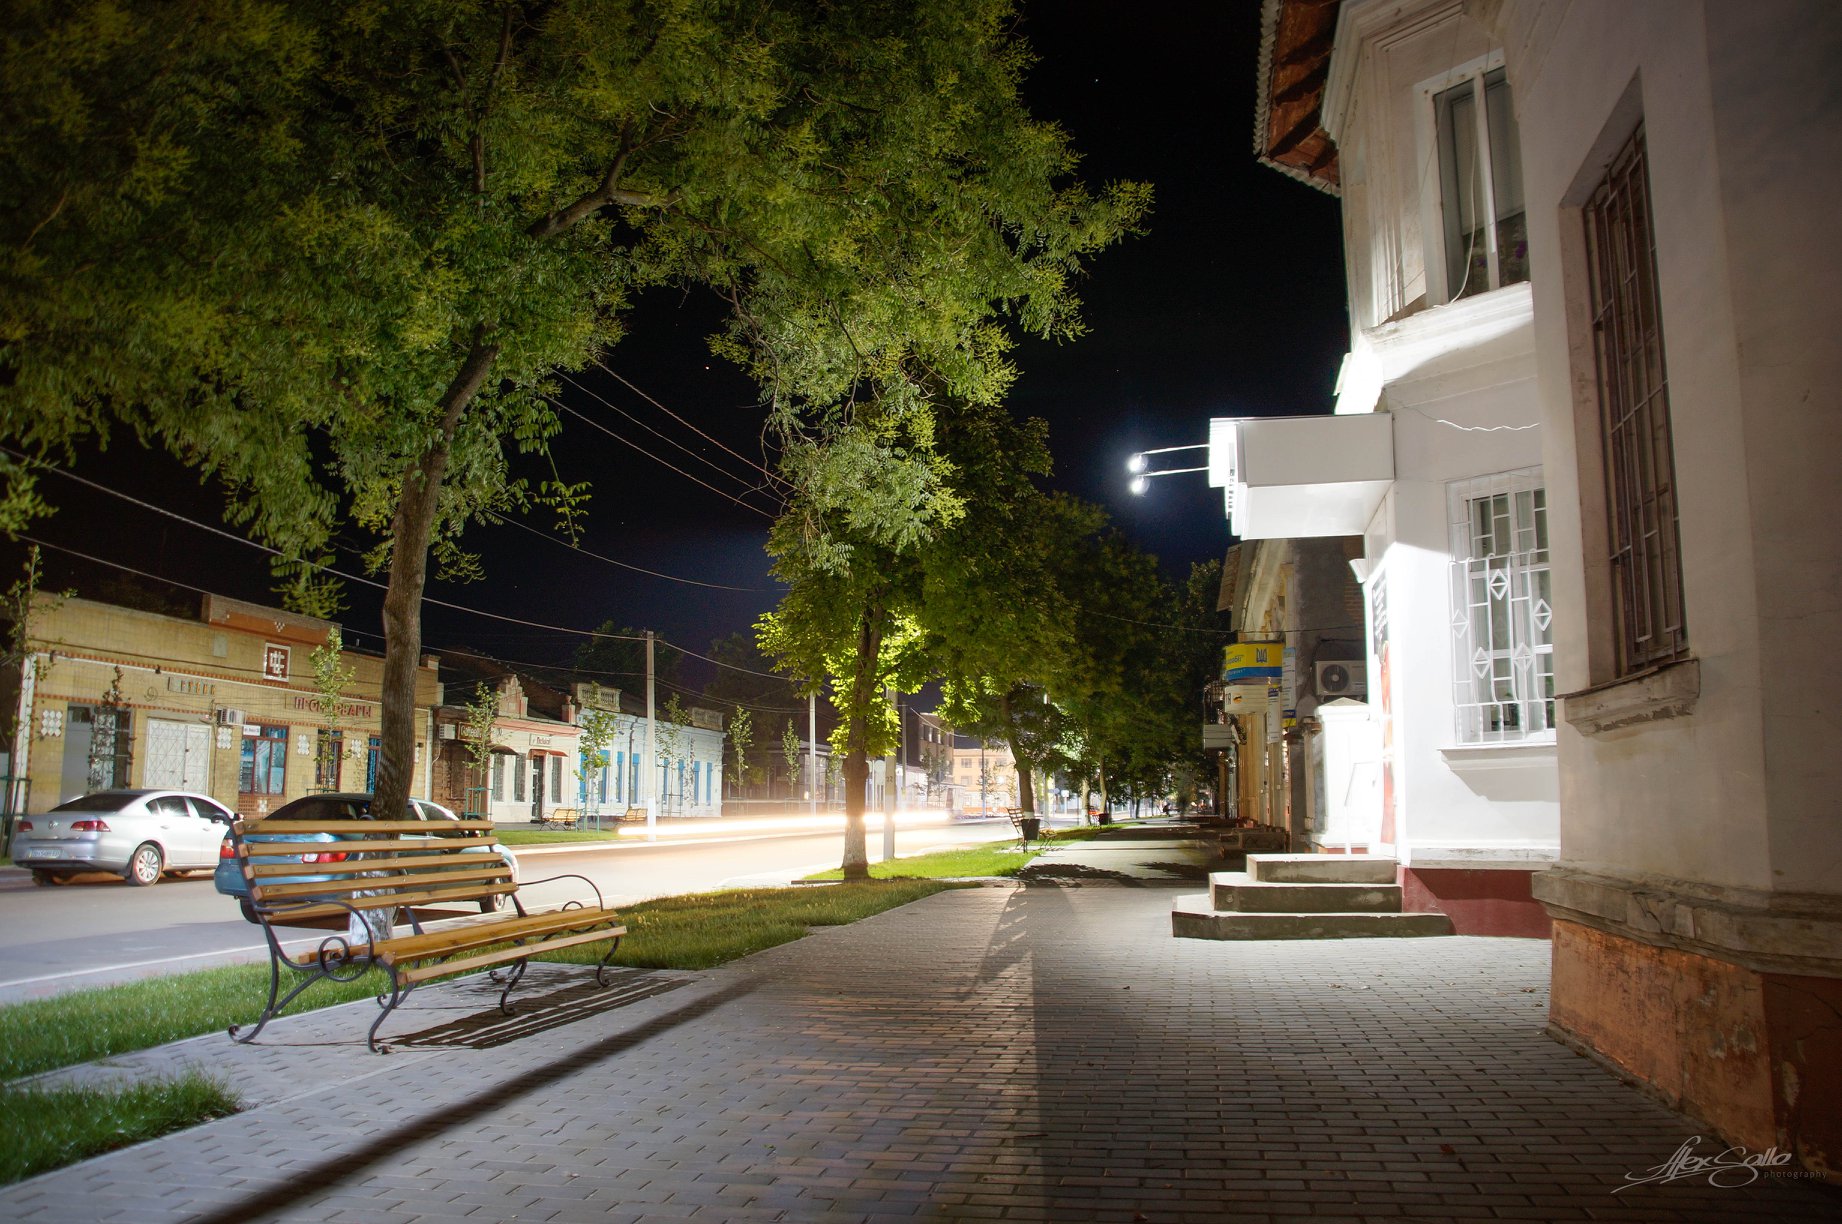 Пока город спит: фотопрогулка по ночной Килии